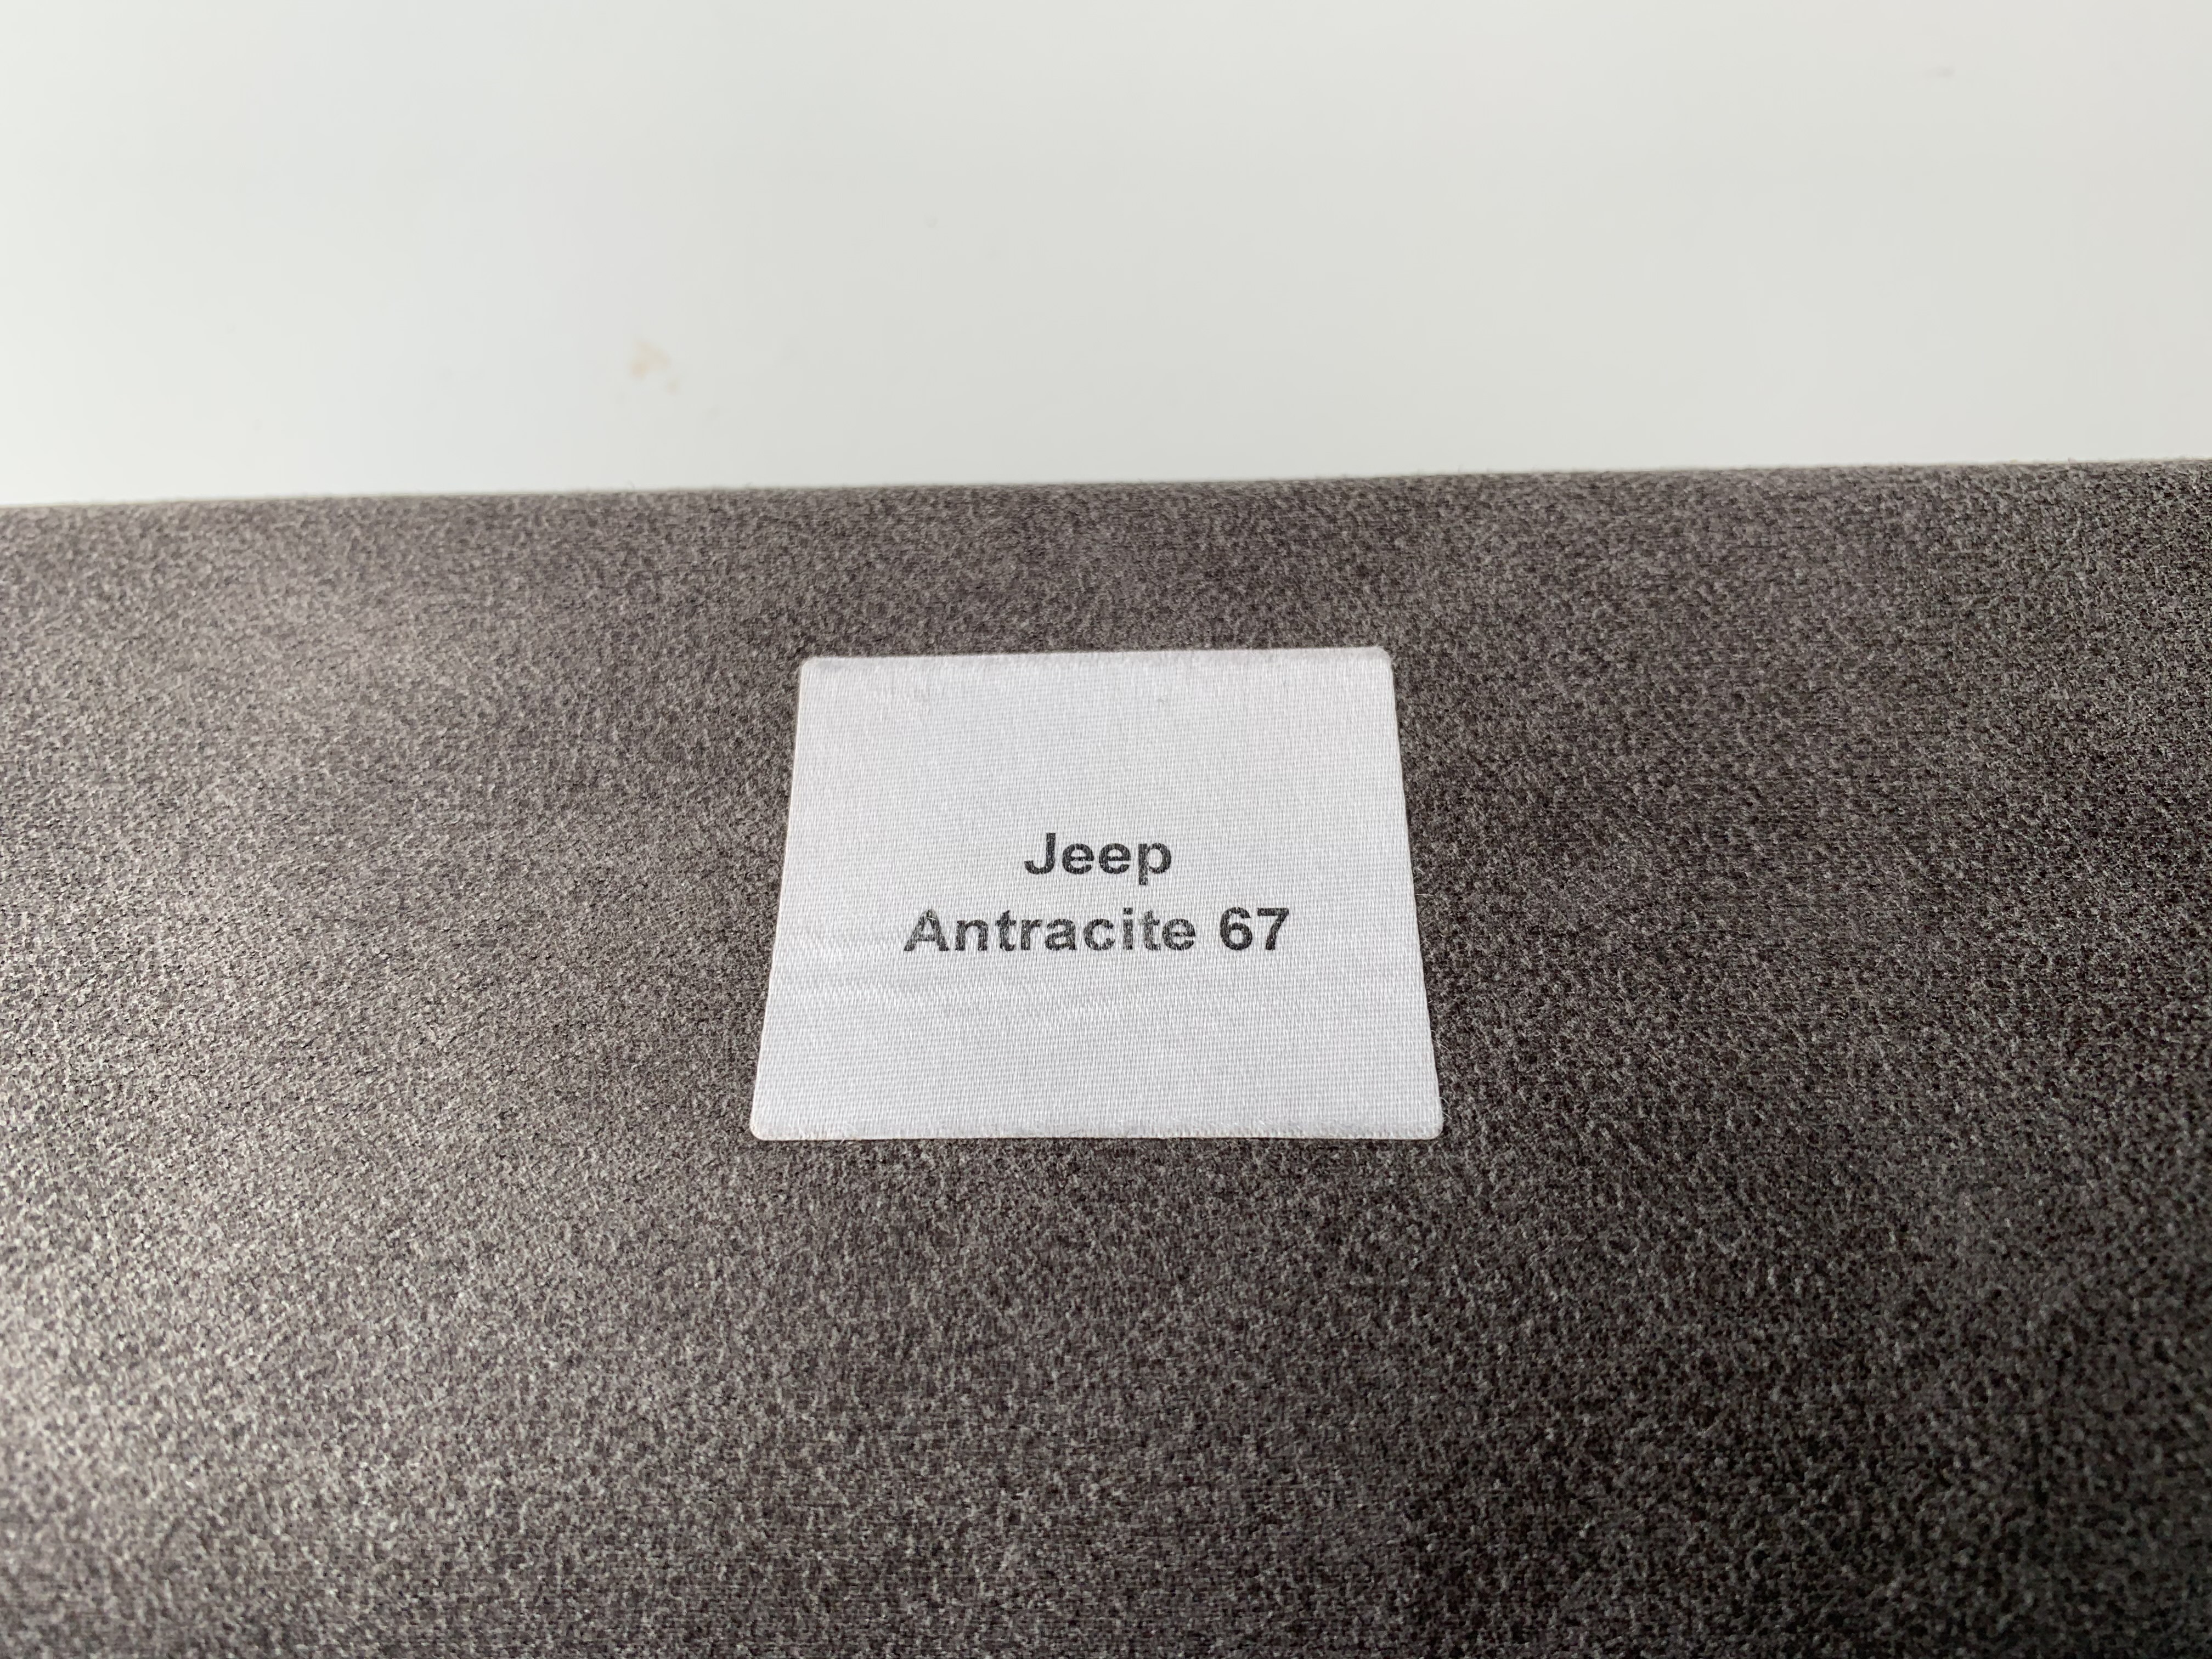 Jeep Antracite 67